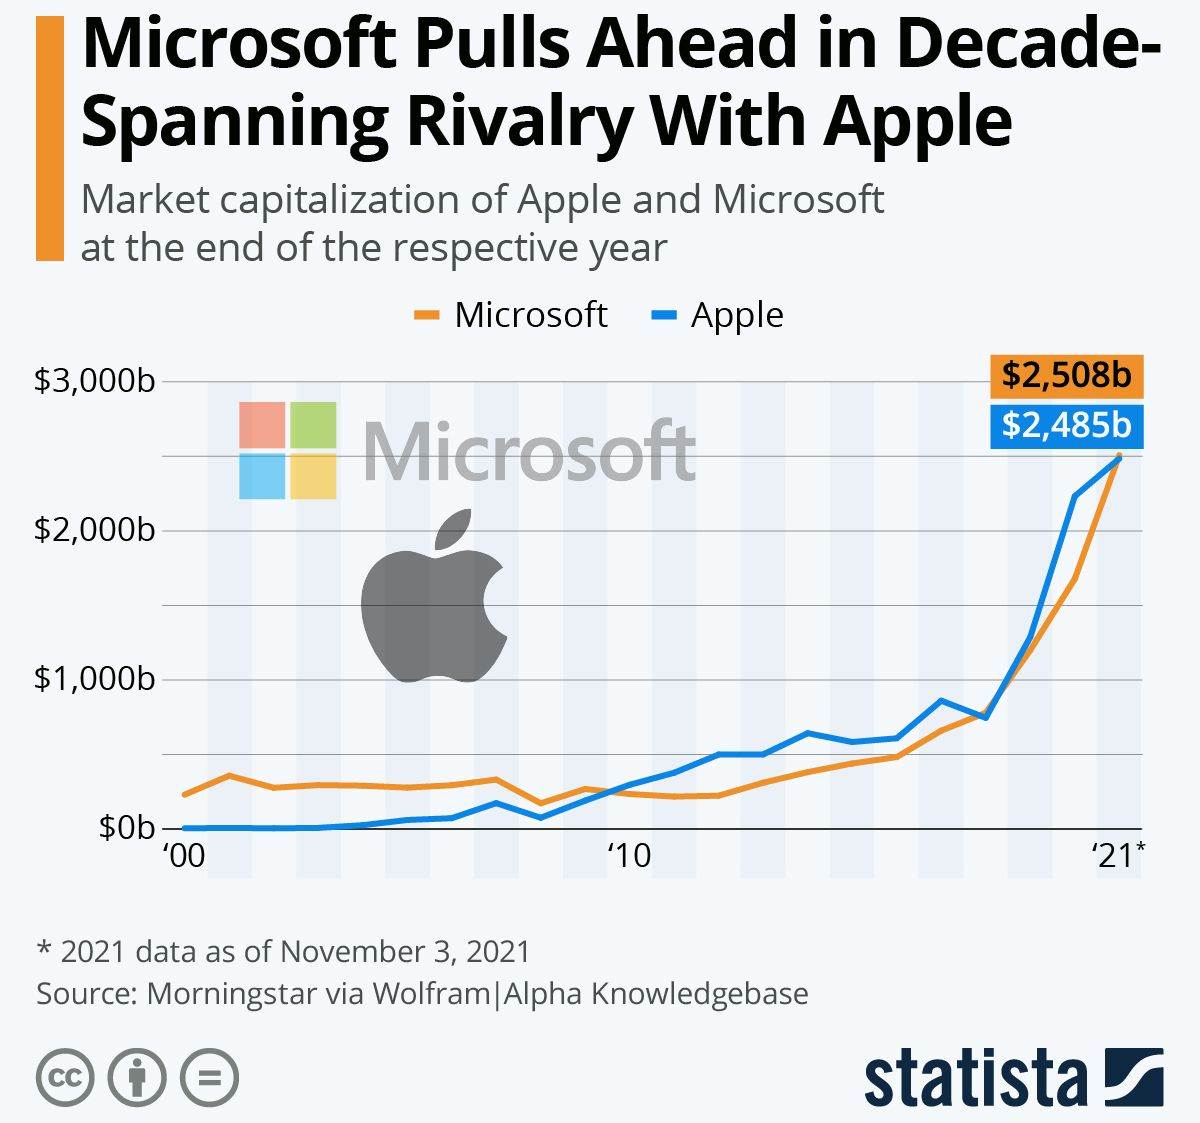  Microsoft vs Apple.jpg 